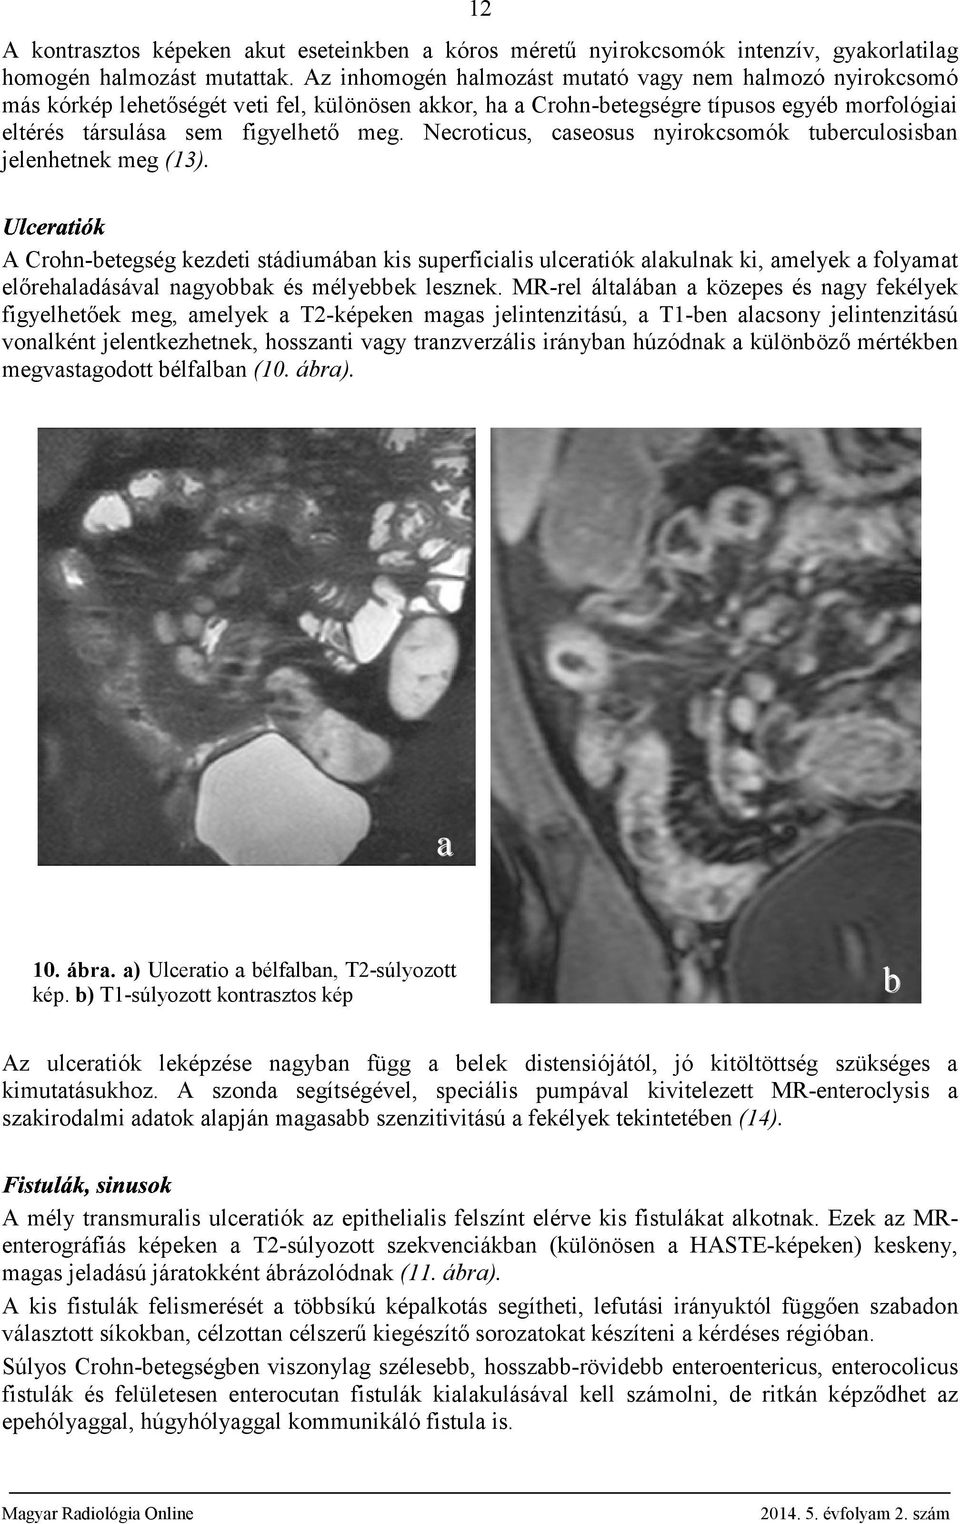 Necroticus, cseosus nyirokcsomók tuerculosisn jelenhetnek meg (13). A Crohn-etegség kezdeti stádiumán kis superficilis ulcertiók lkulnk ki, melyek folymt előrehldásávl ngyok és mélyeek lesznek.